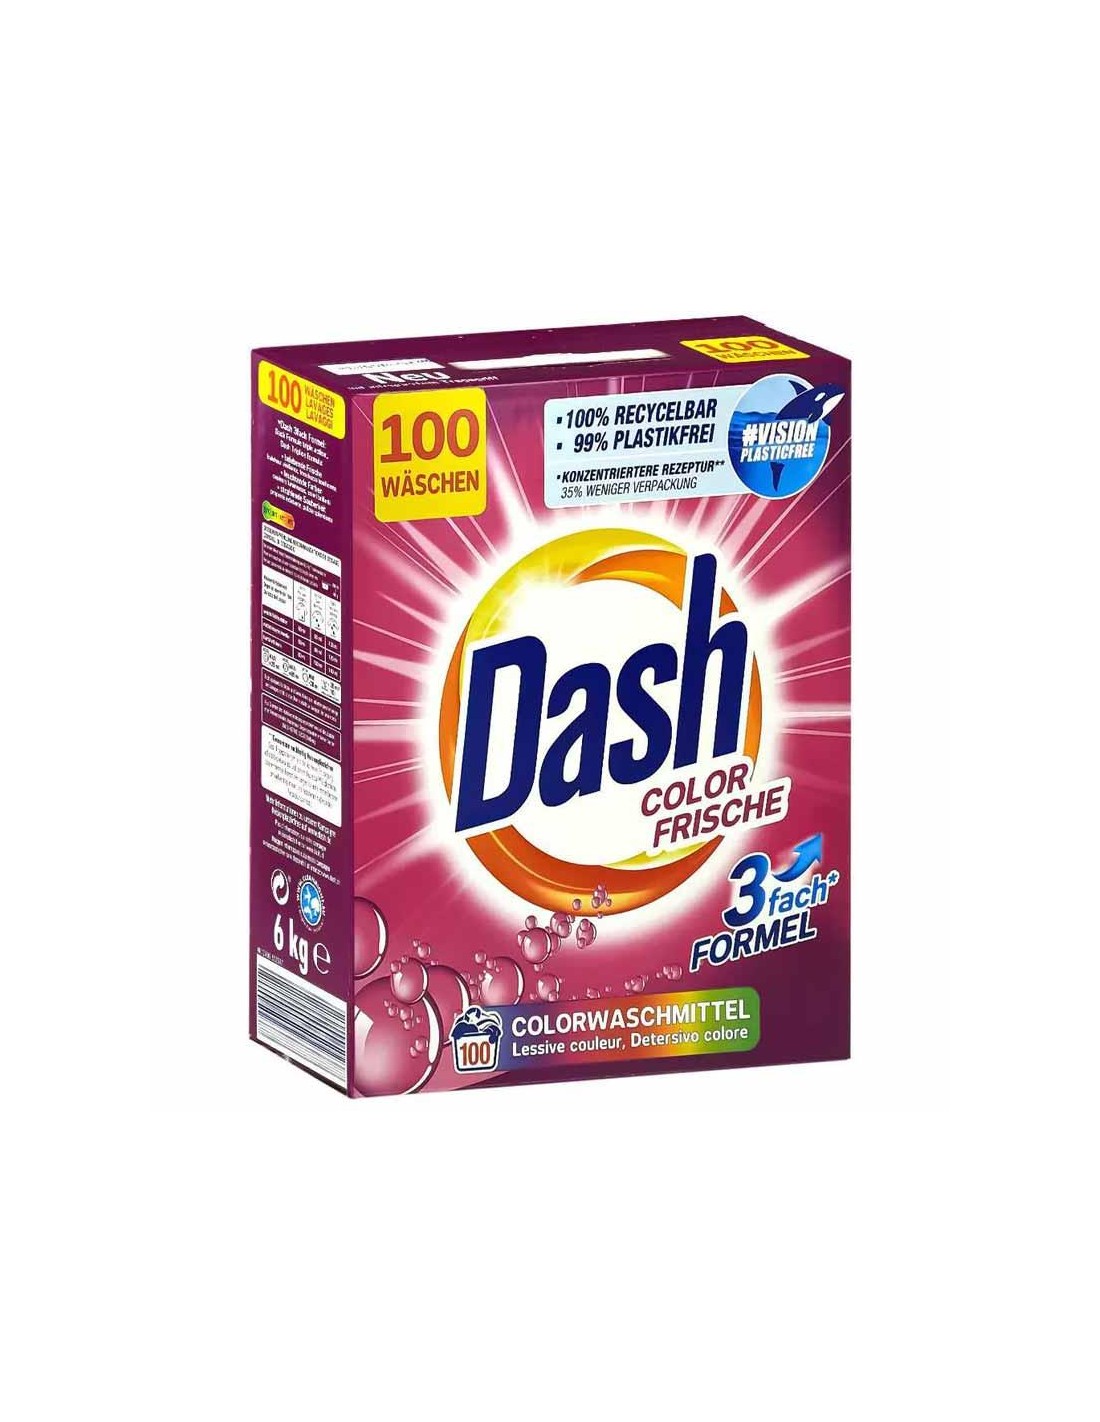 Dash Polvere Professionale Color Frische 100 Lavaggi 6 Kg